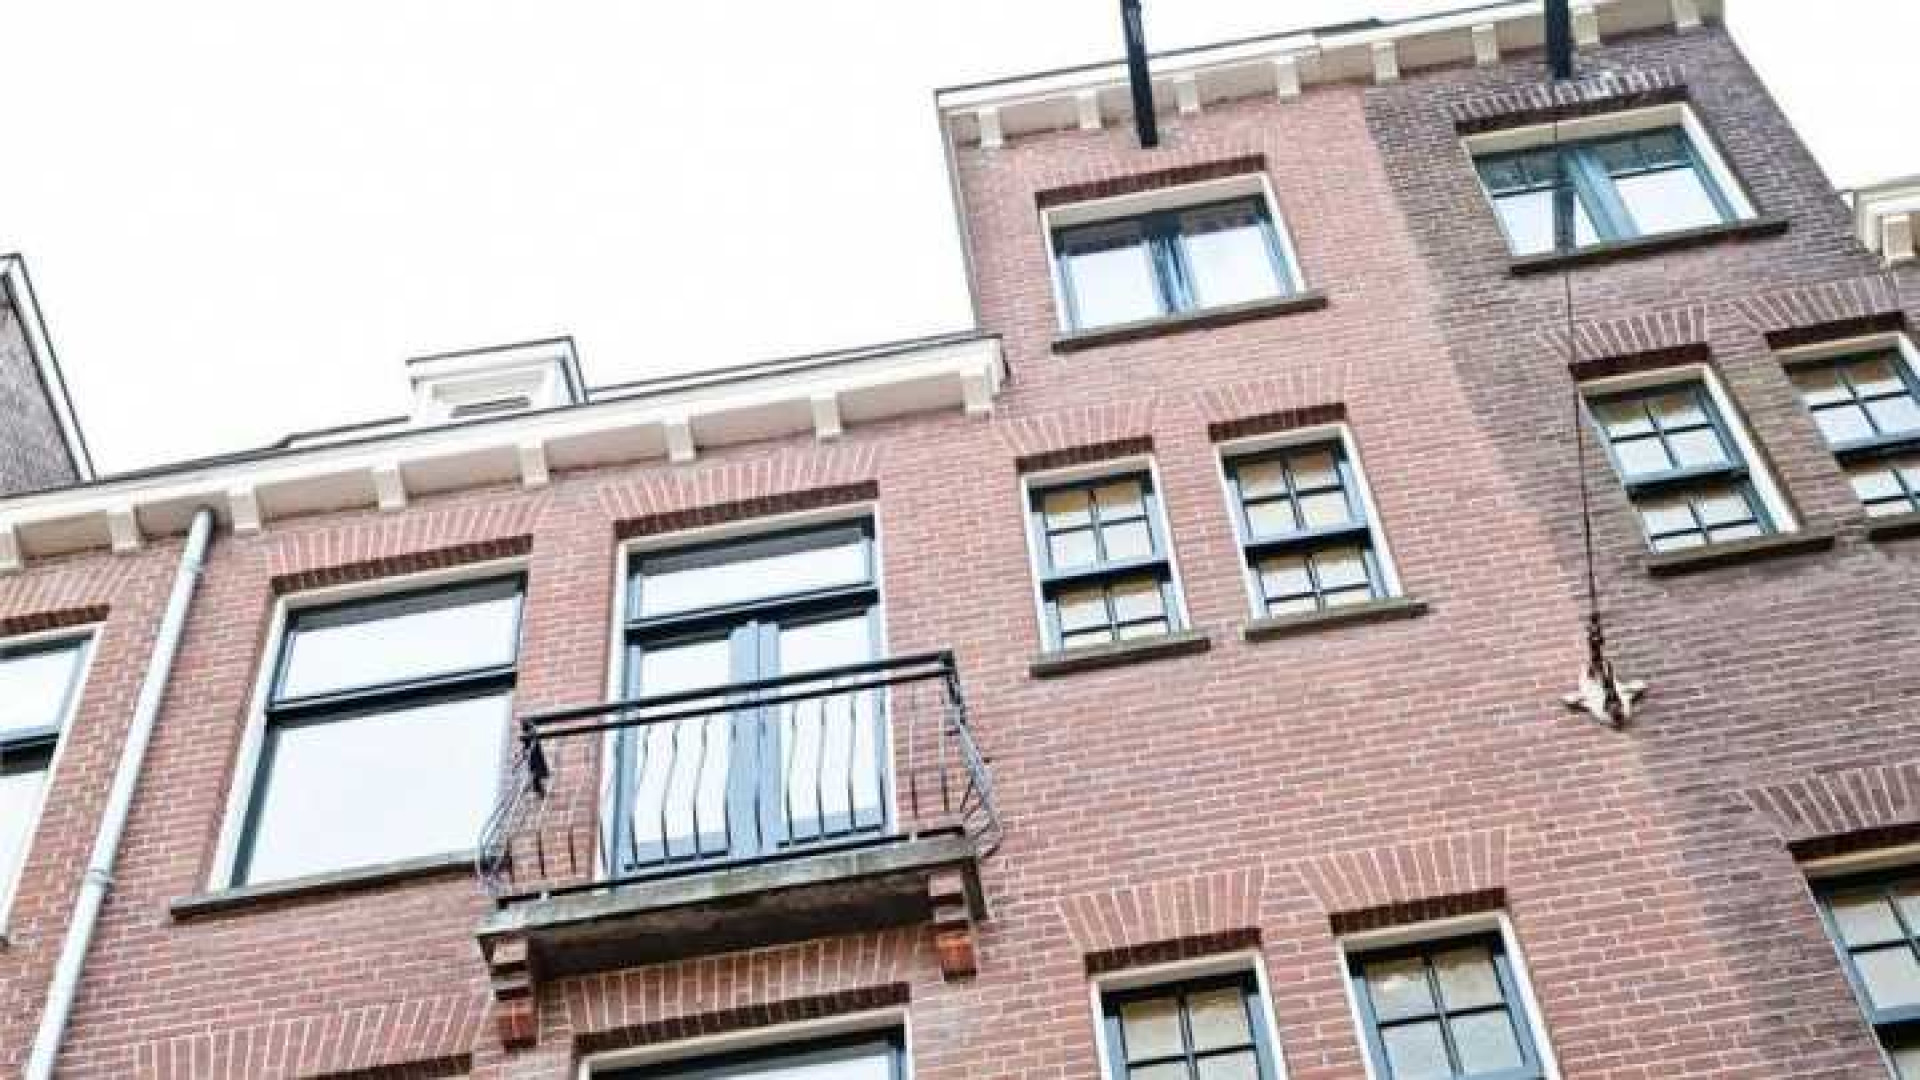 Assistent bondscoach Danny Blind koopt appartement in populaire Amsterdamse wijk. Zie foto's 1